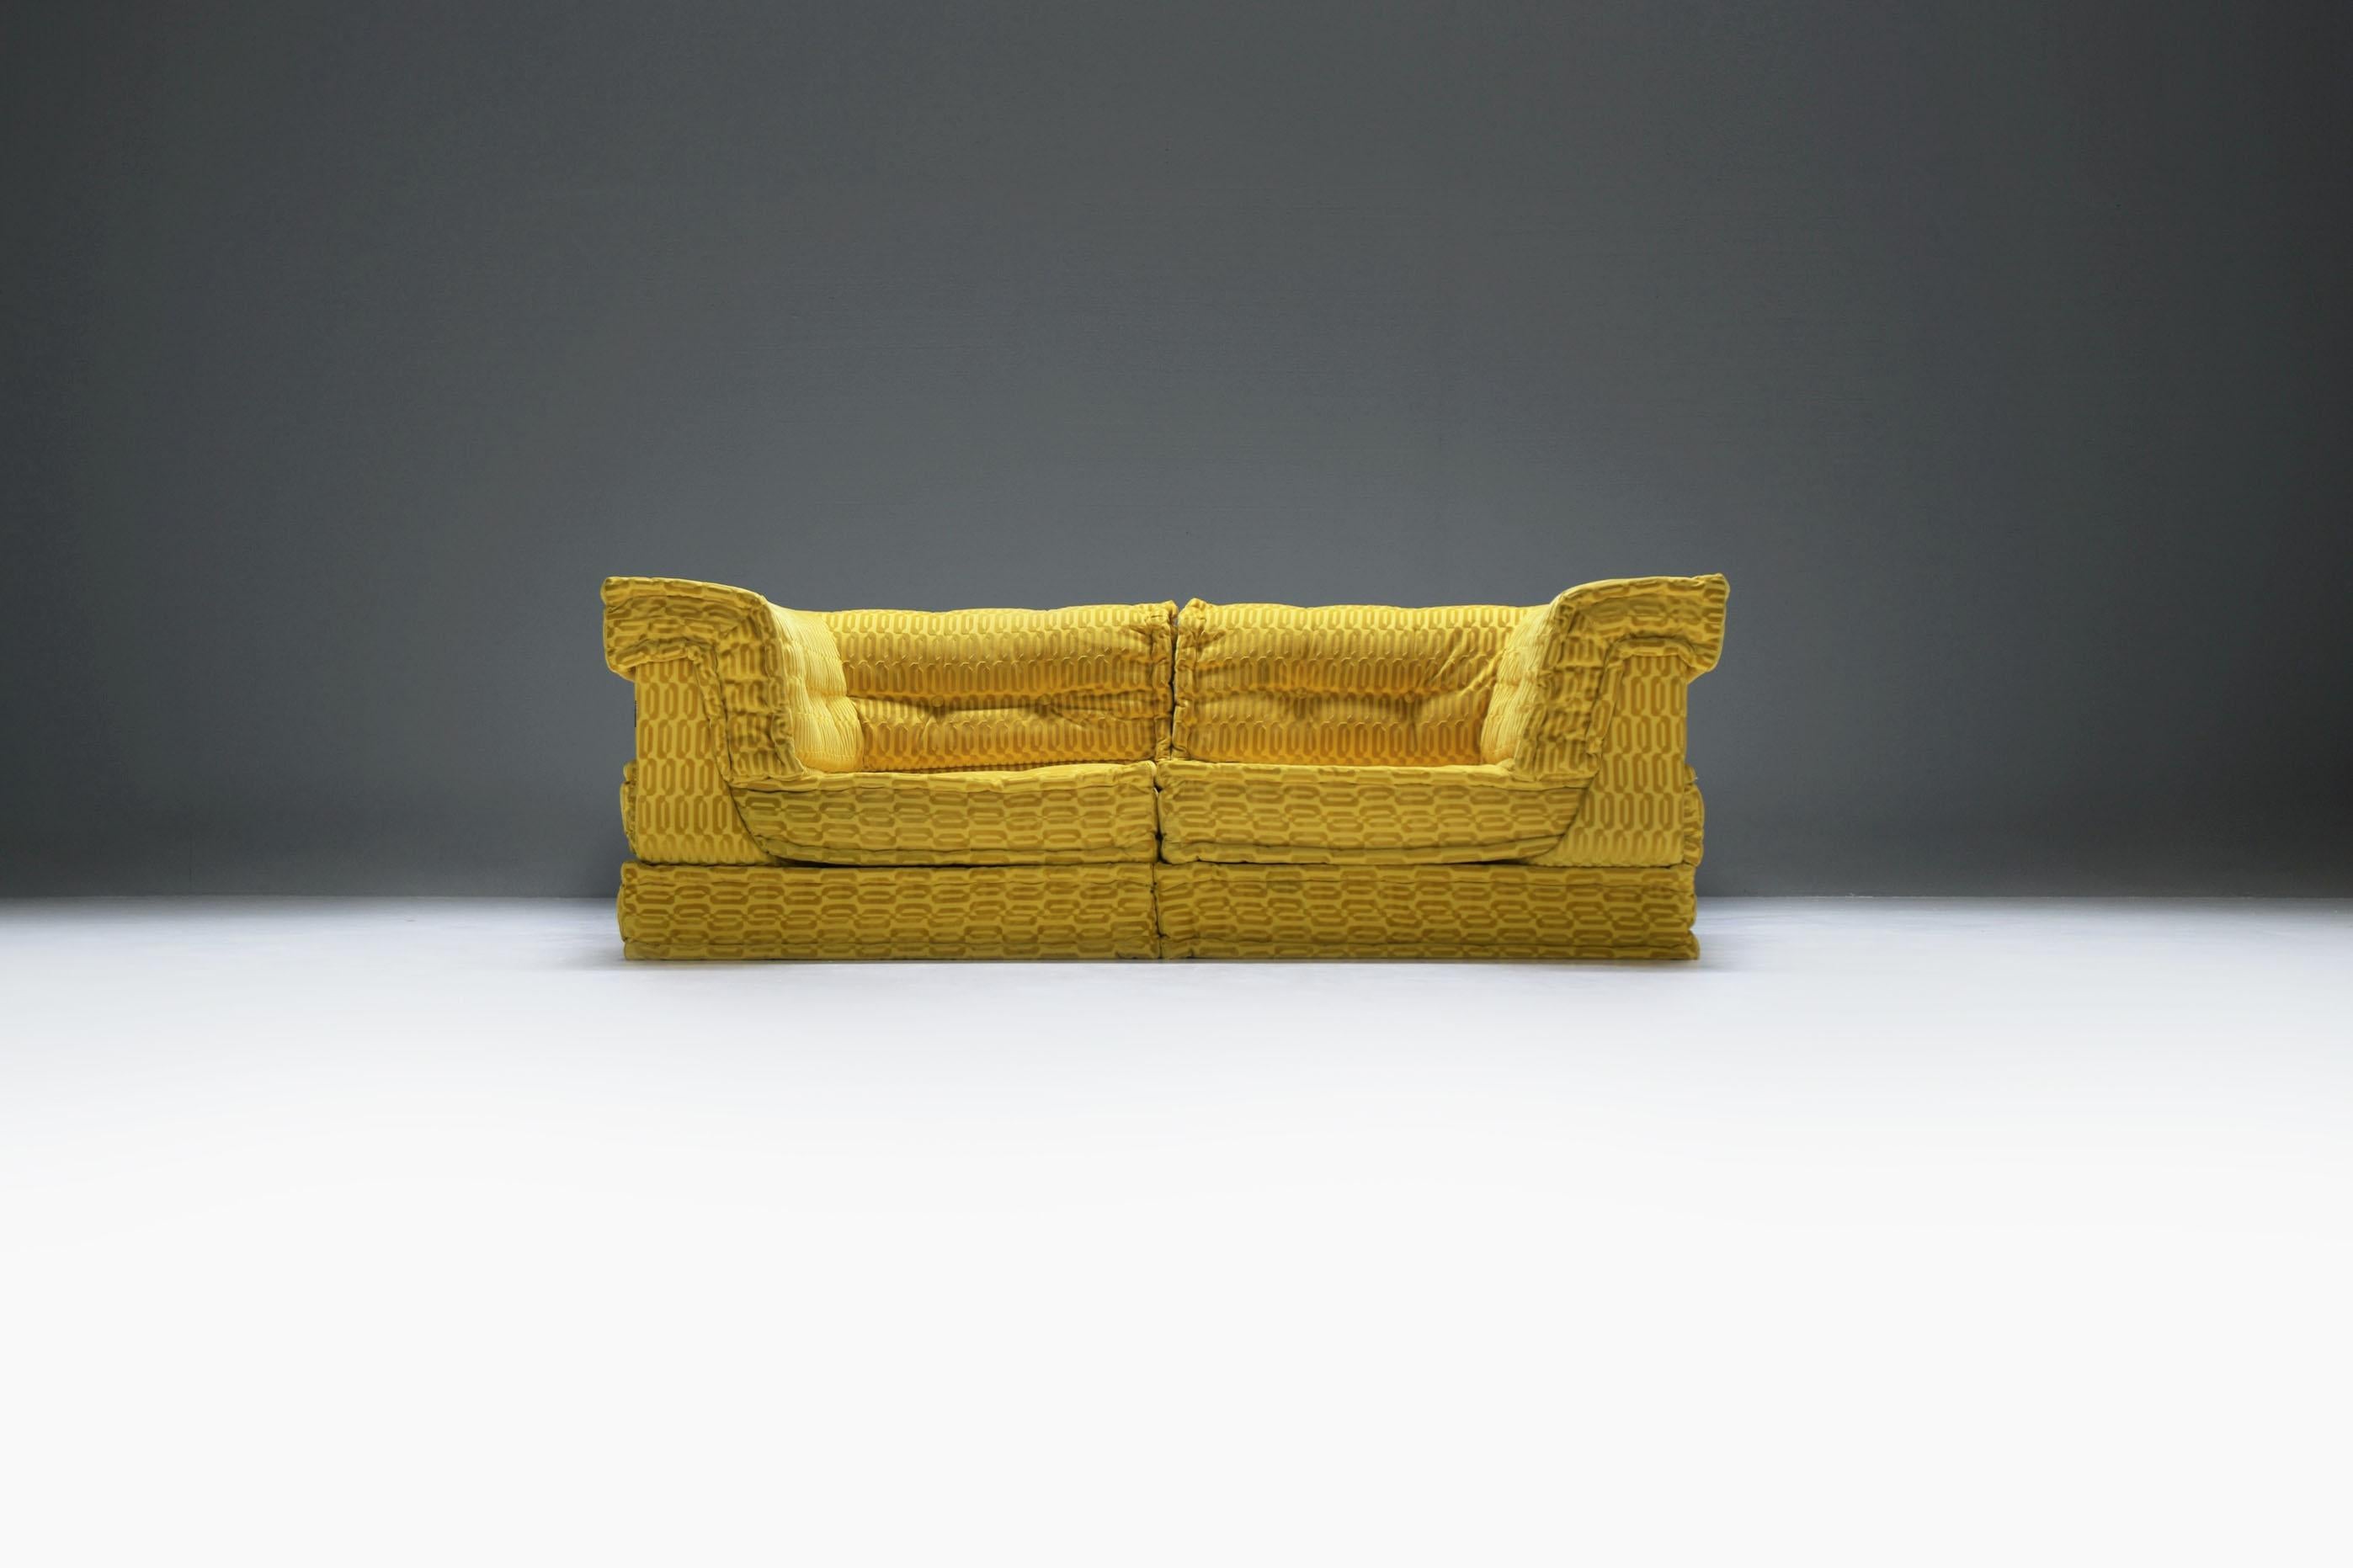 Mah Jong extrêmement rare et étonnant !  Roche Bobois a créé ce canapé unique pour un client spécial dans un tissu jaune/or personnalisé. Le choix du tissu jaune/or vibrant ajoute une touche de luxe et d'élégance à la pièce, ce qui en fait un